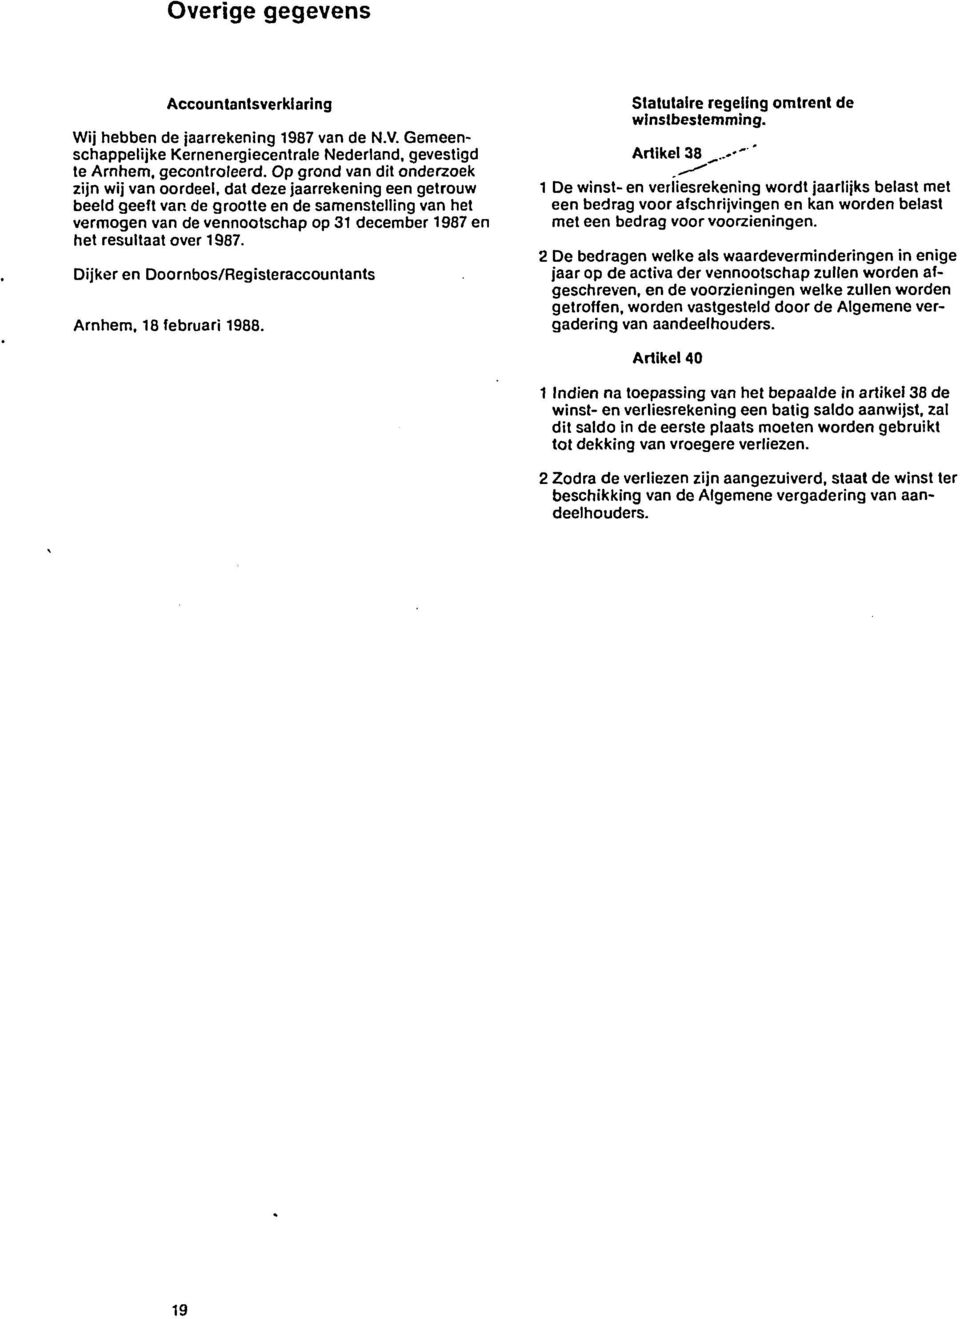 de grootte en de samenstelling van het vermögen van de vennootschap op 31 december 1987 en het resultaat over 1987. Dijker en Doornbos/Registeraccountants Arnhem, 18 februari 1988.